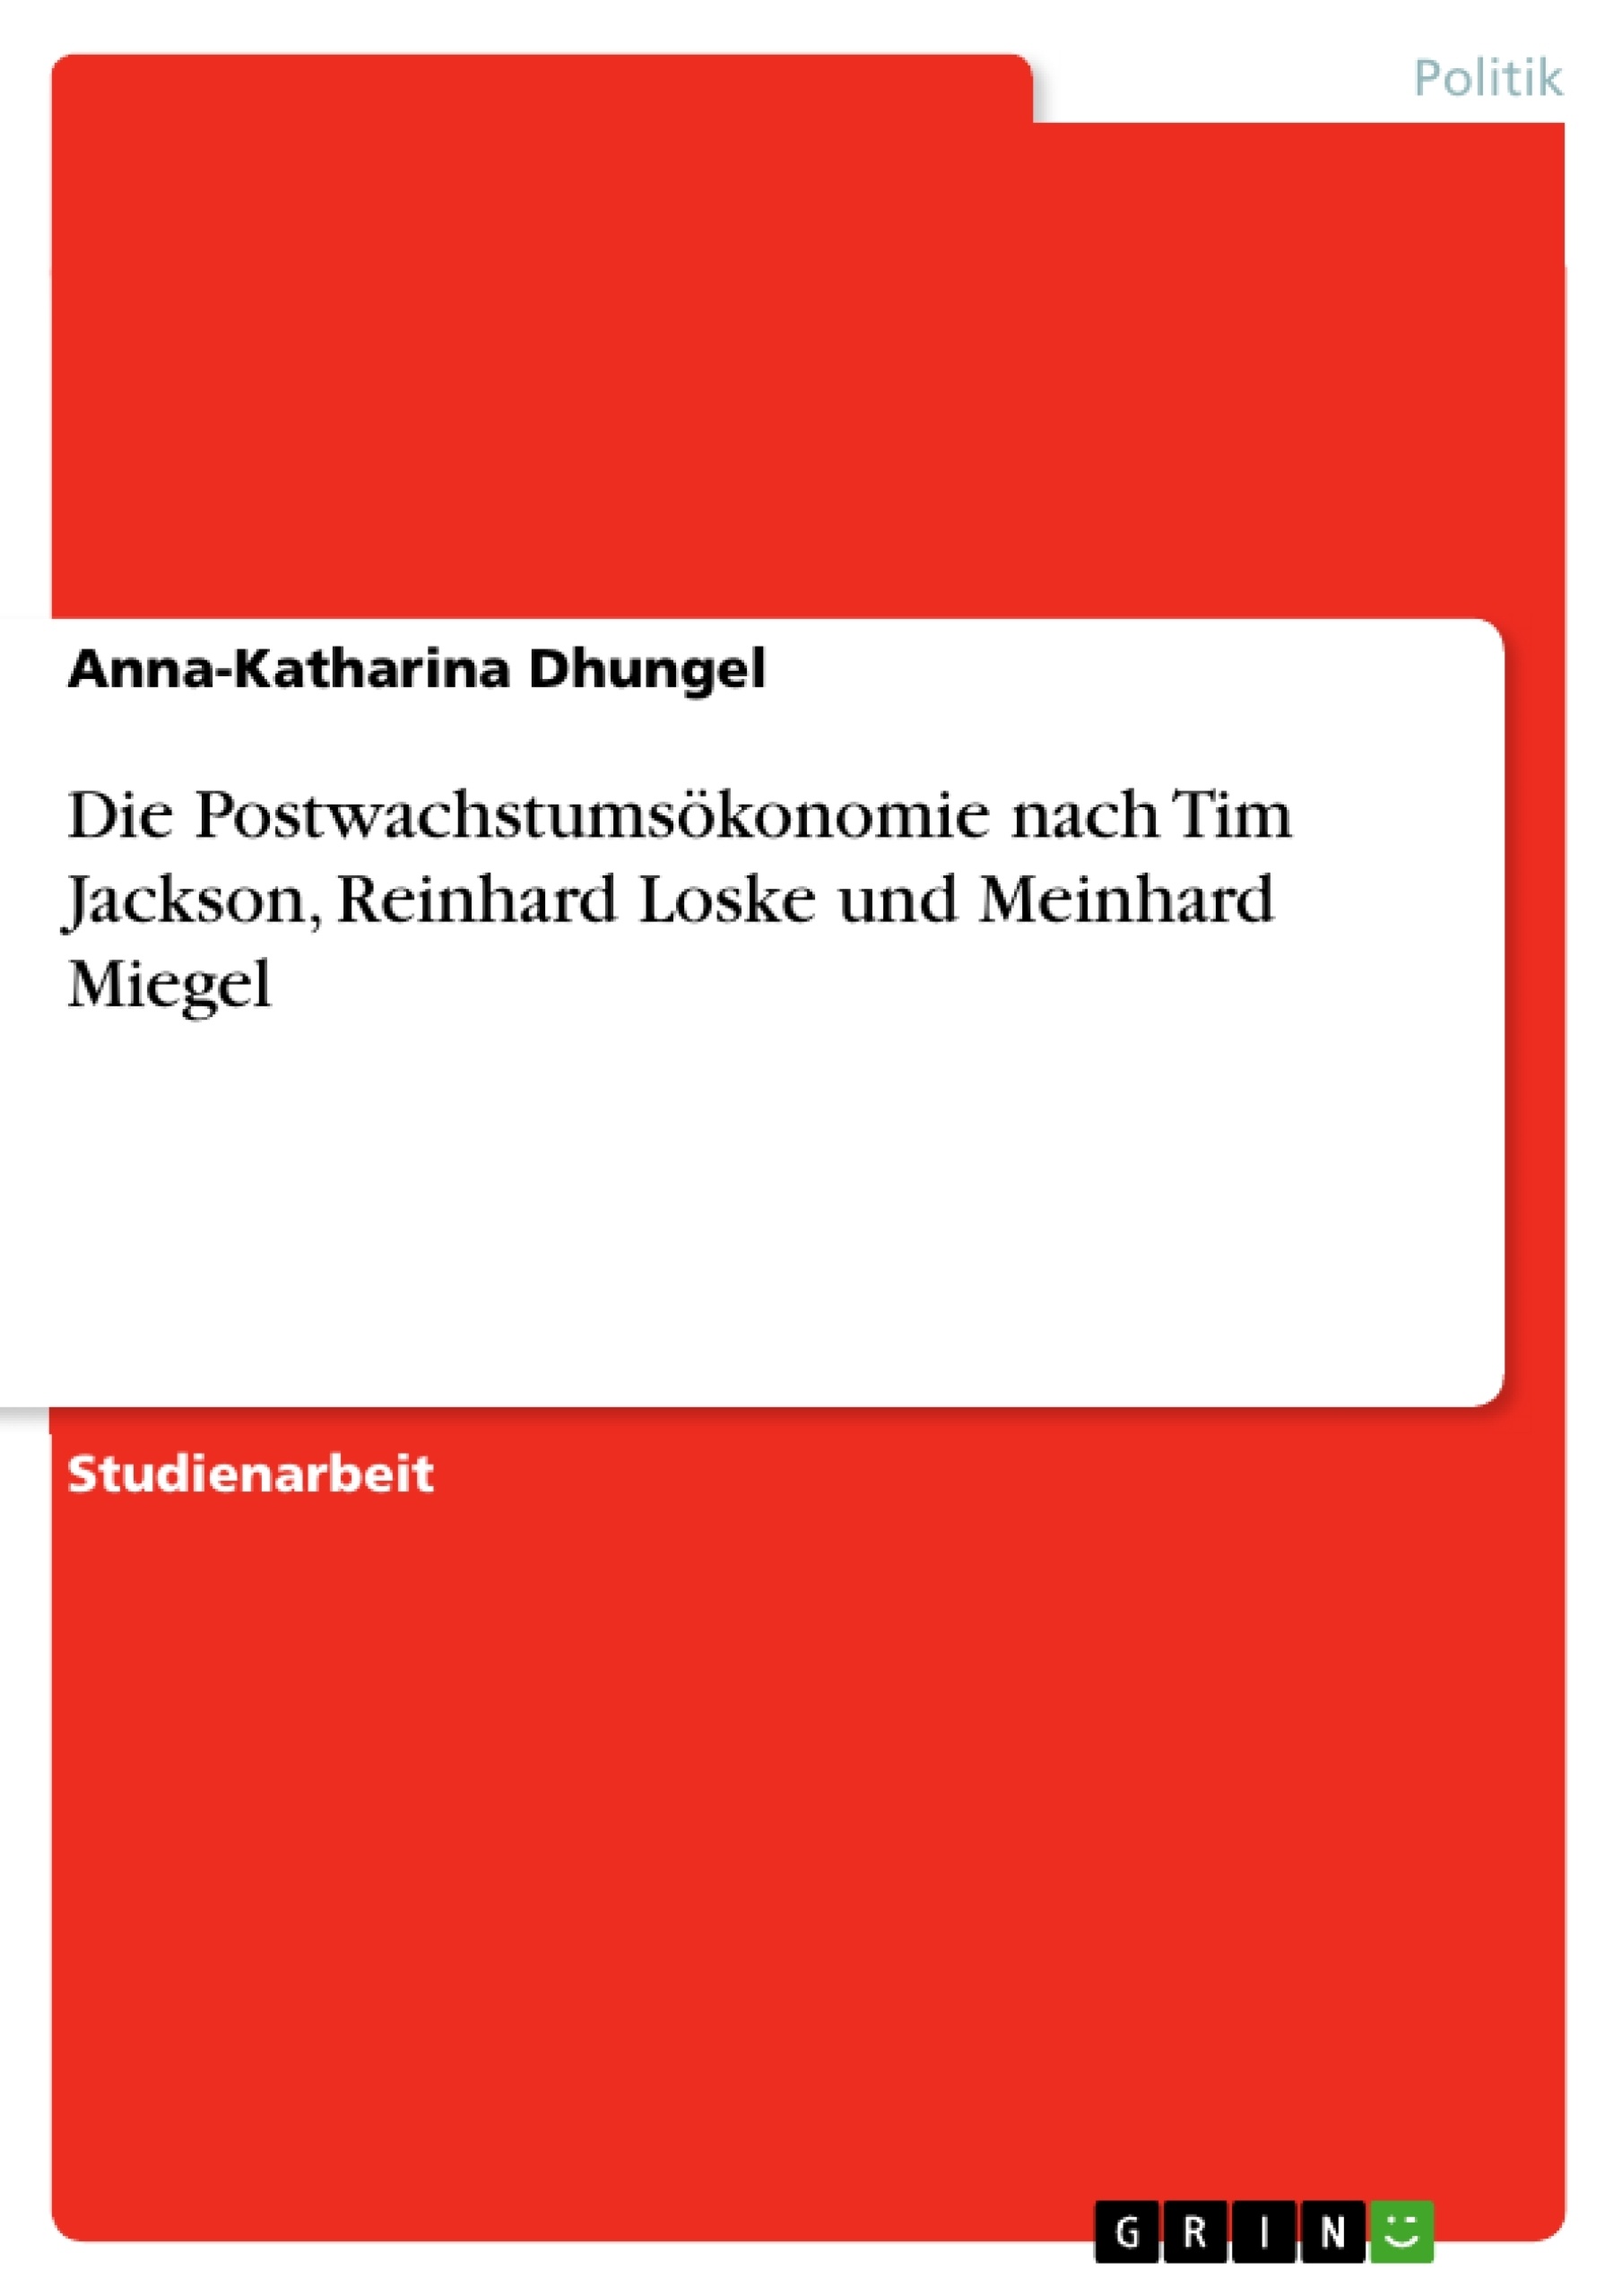 Título: Die Postwachstumsökonomie nach Tim Jackson, Reinhard Loske und Meinhard Miegel